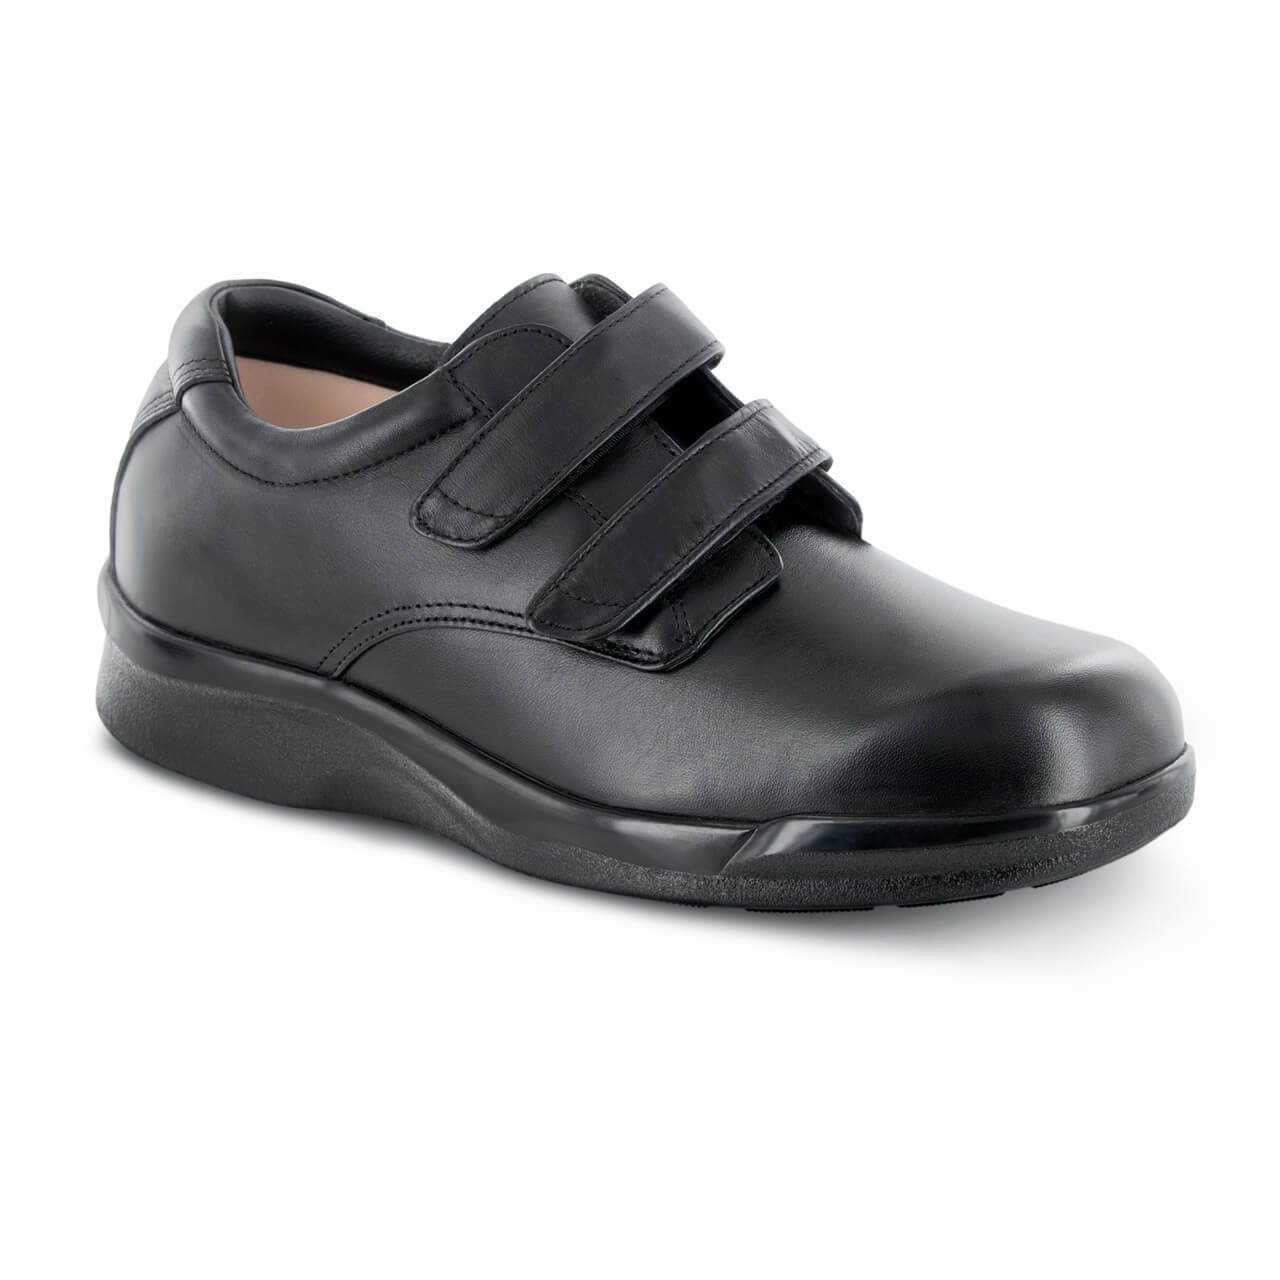 Apex Conform Double Strap - Men's Ultra-Comfort Shoes